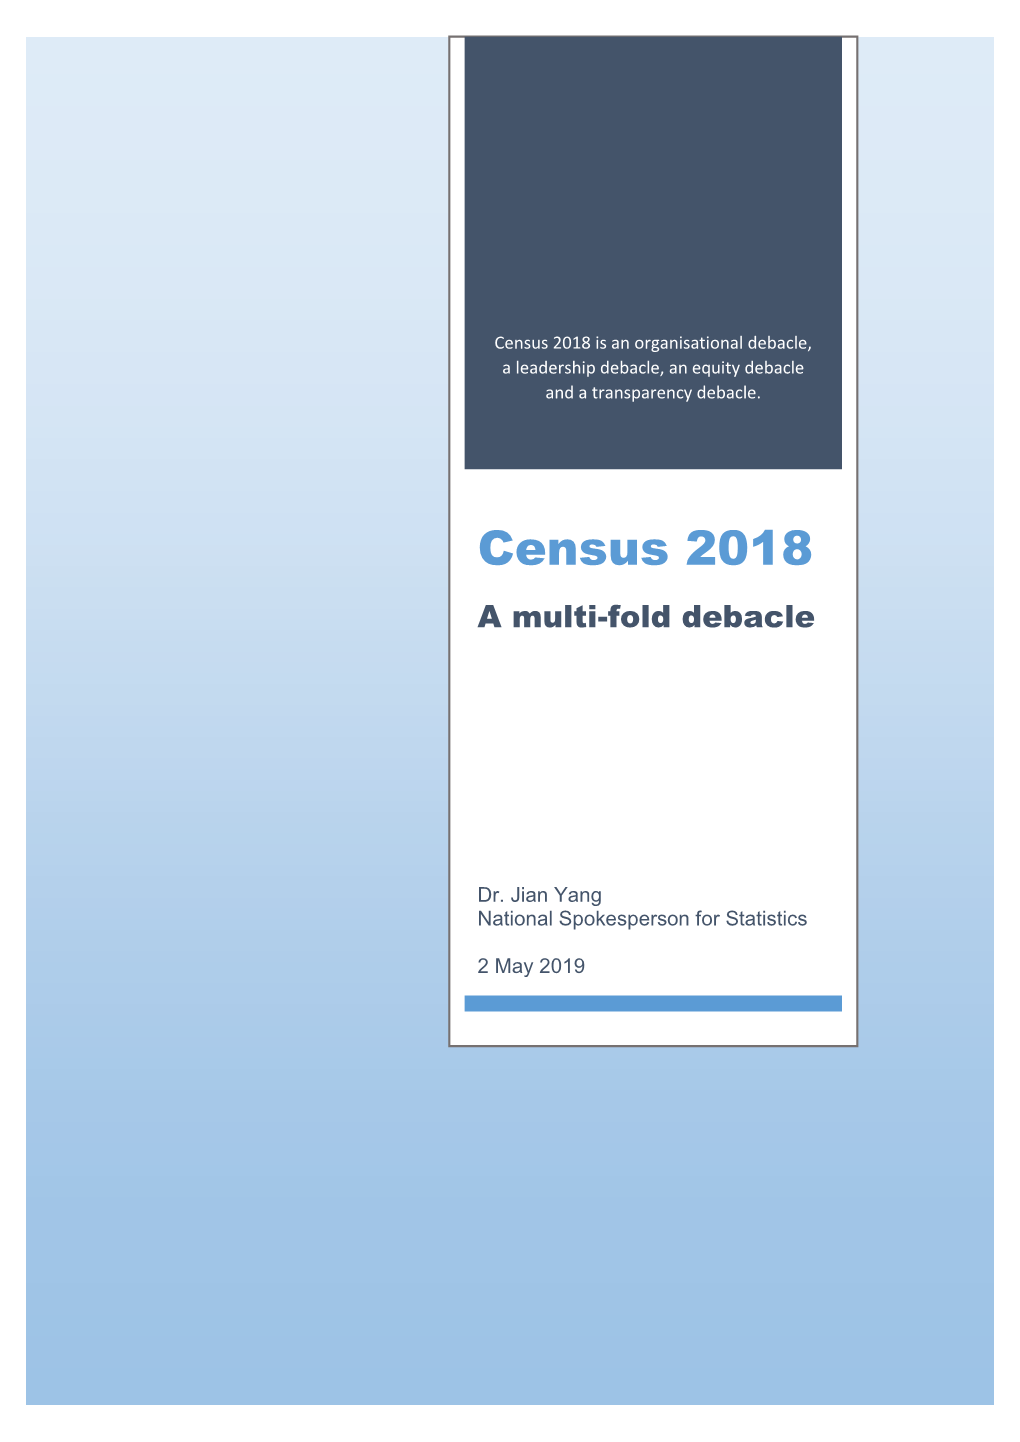 Census 2018 Is an Organisational Debacle, a Leadership Debacle, an Equity Debacle and a Transparency Debacle